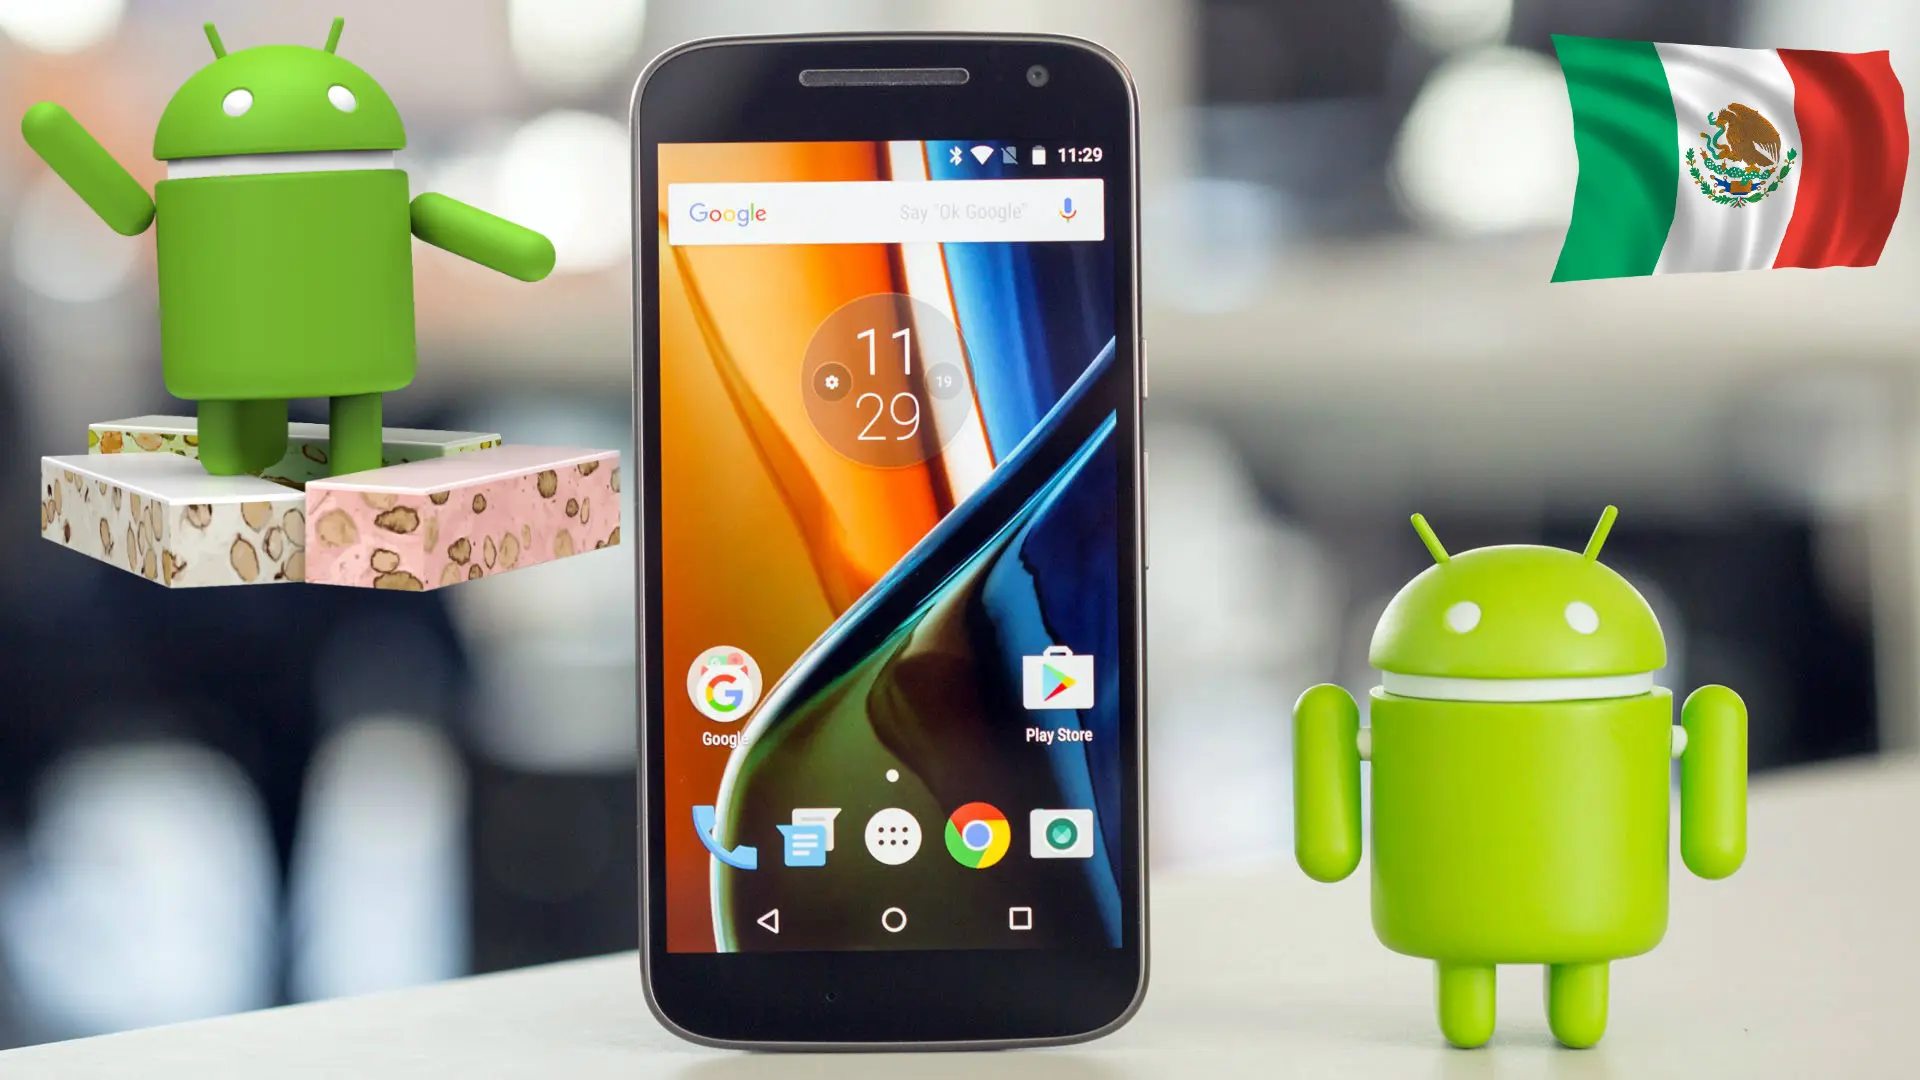 Moto G4 comienza a recibir Android 7.0 Nougat en México